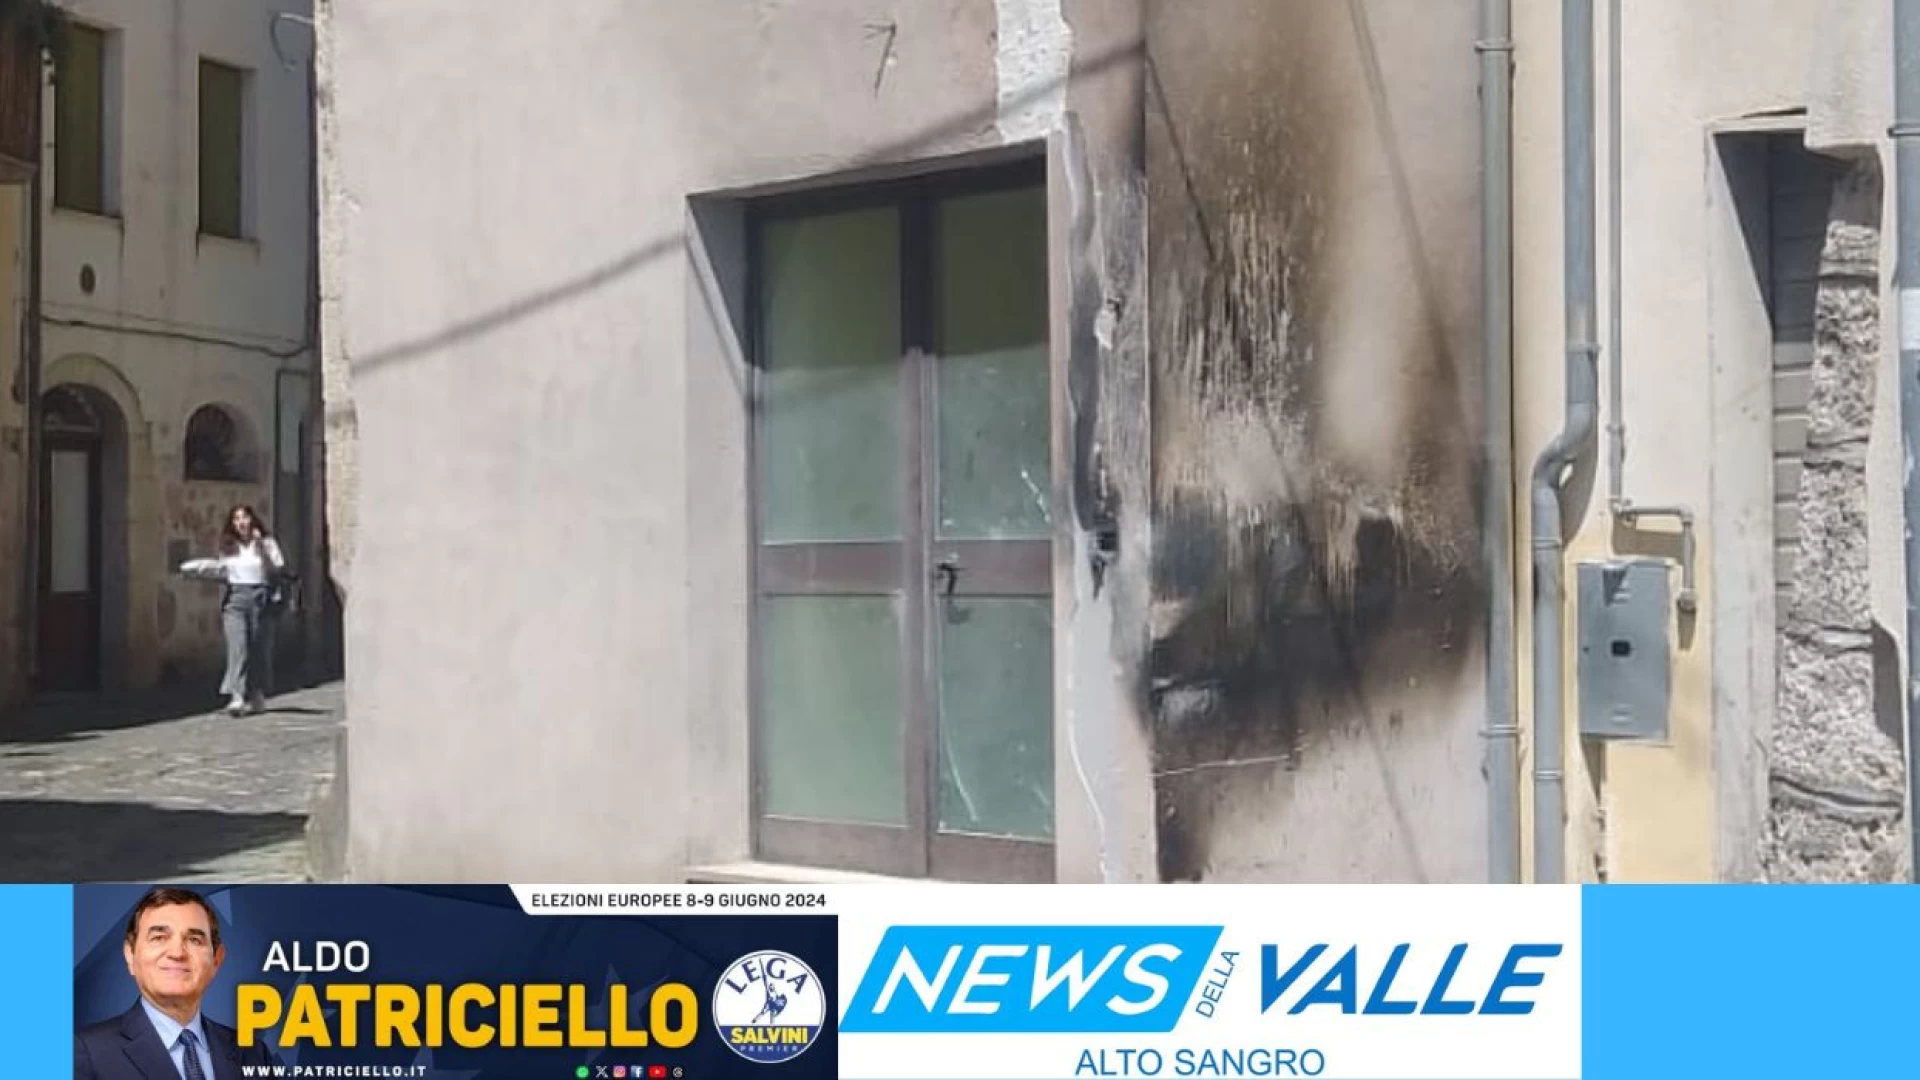 Venafro: a fuoco rifiuti e vecchi divani in Piazza Porta Nuova. Intervenuti i Vigili del Fuoco e i Carabinieri.